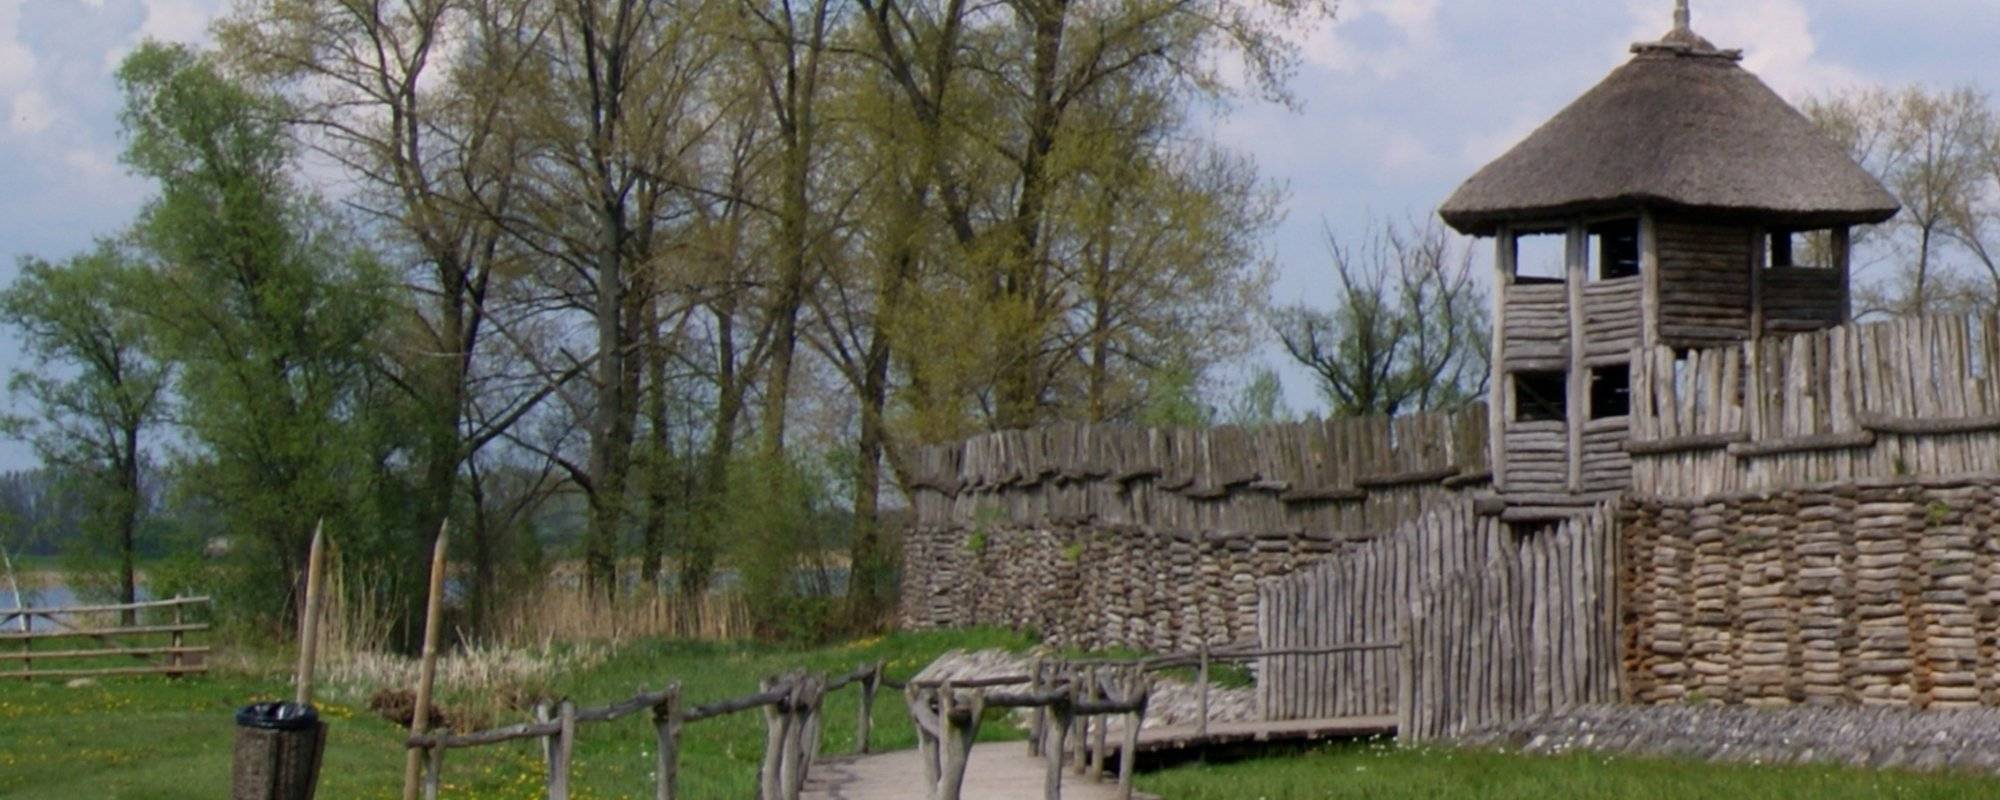 Biskupin : Fortified Iron Age Settlement / Befestigte Siedlung aus der Eisenzeit